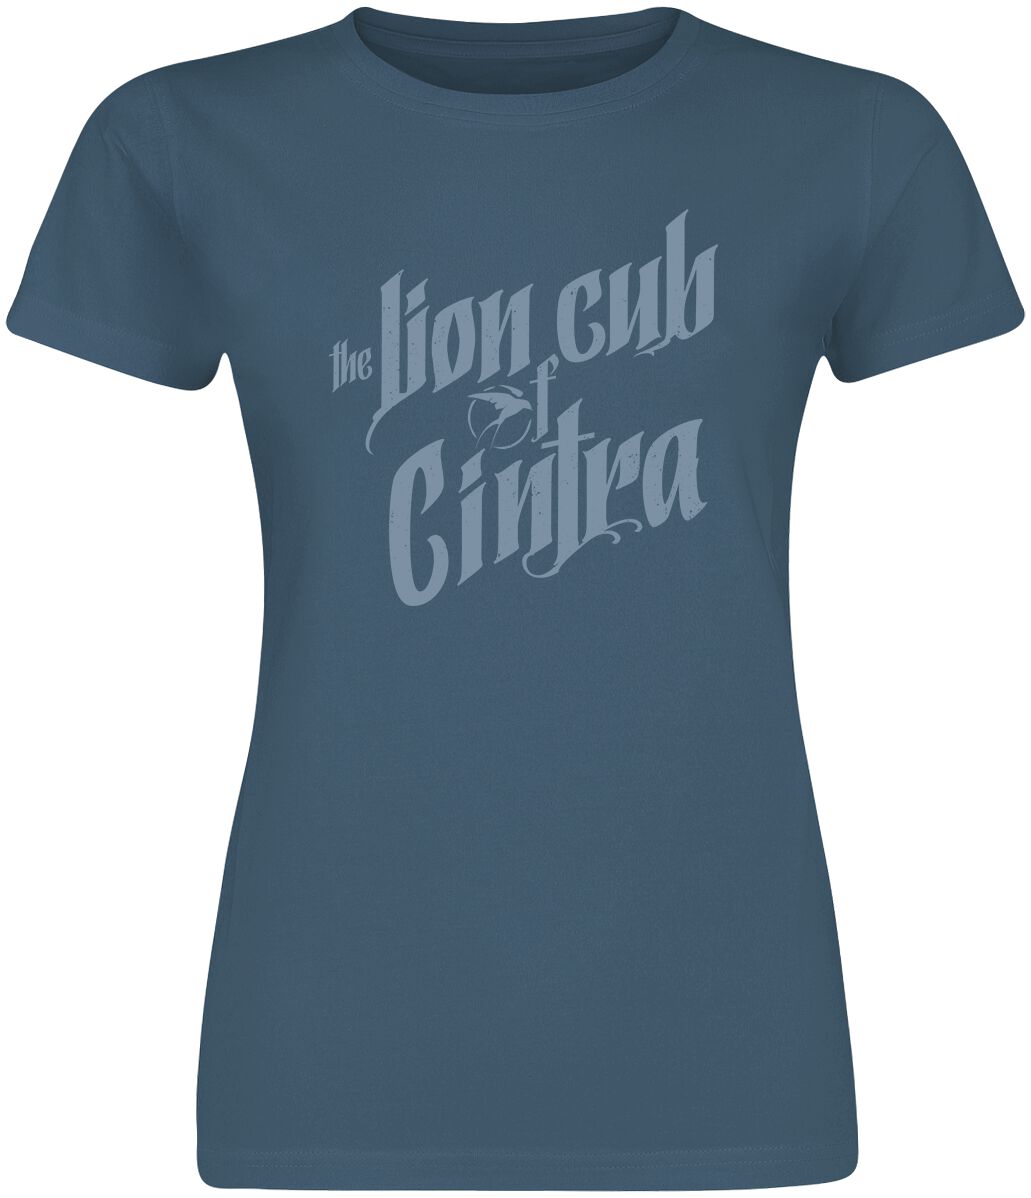 T-Shirt Manches courtes de The Witcher - Lion Cub Of Cintra - S à XL - pour Femme - bleu